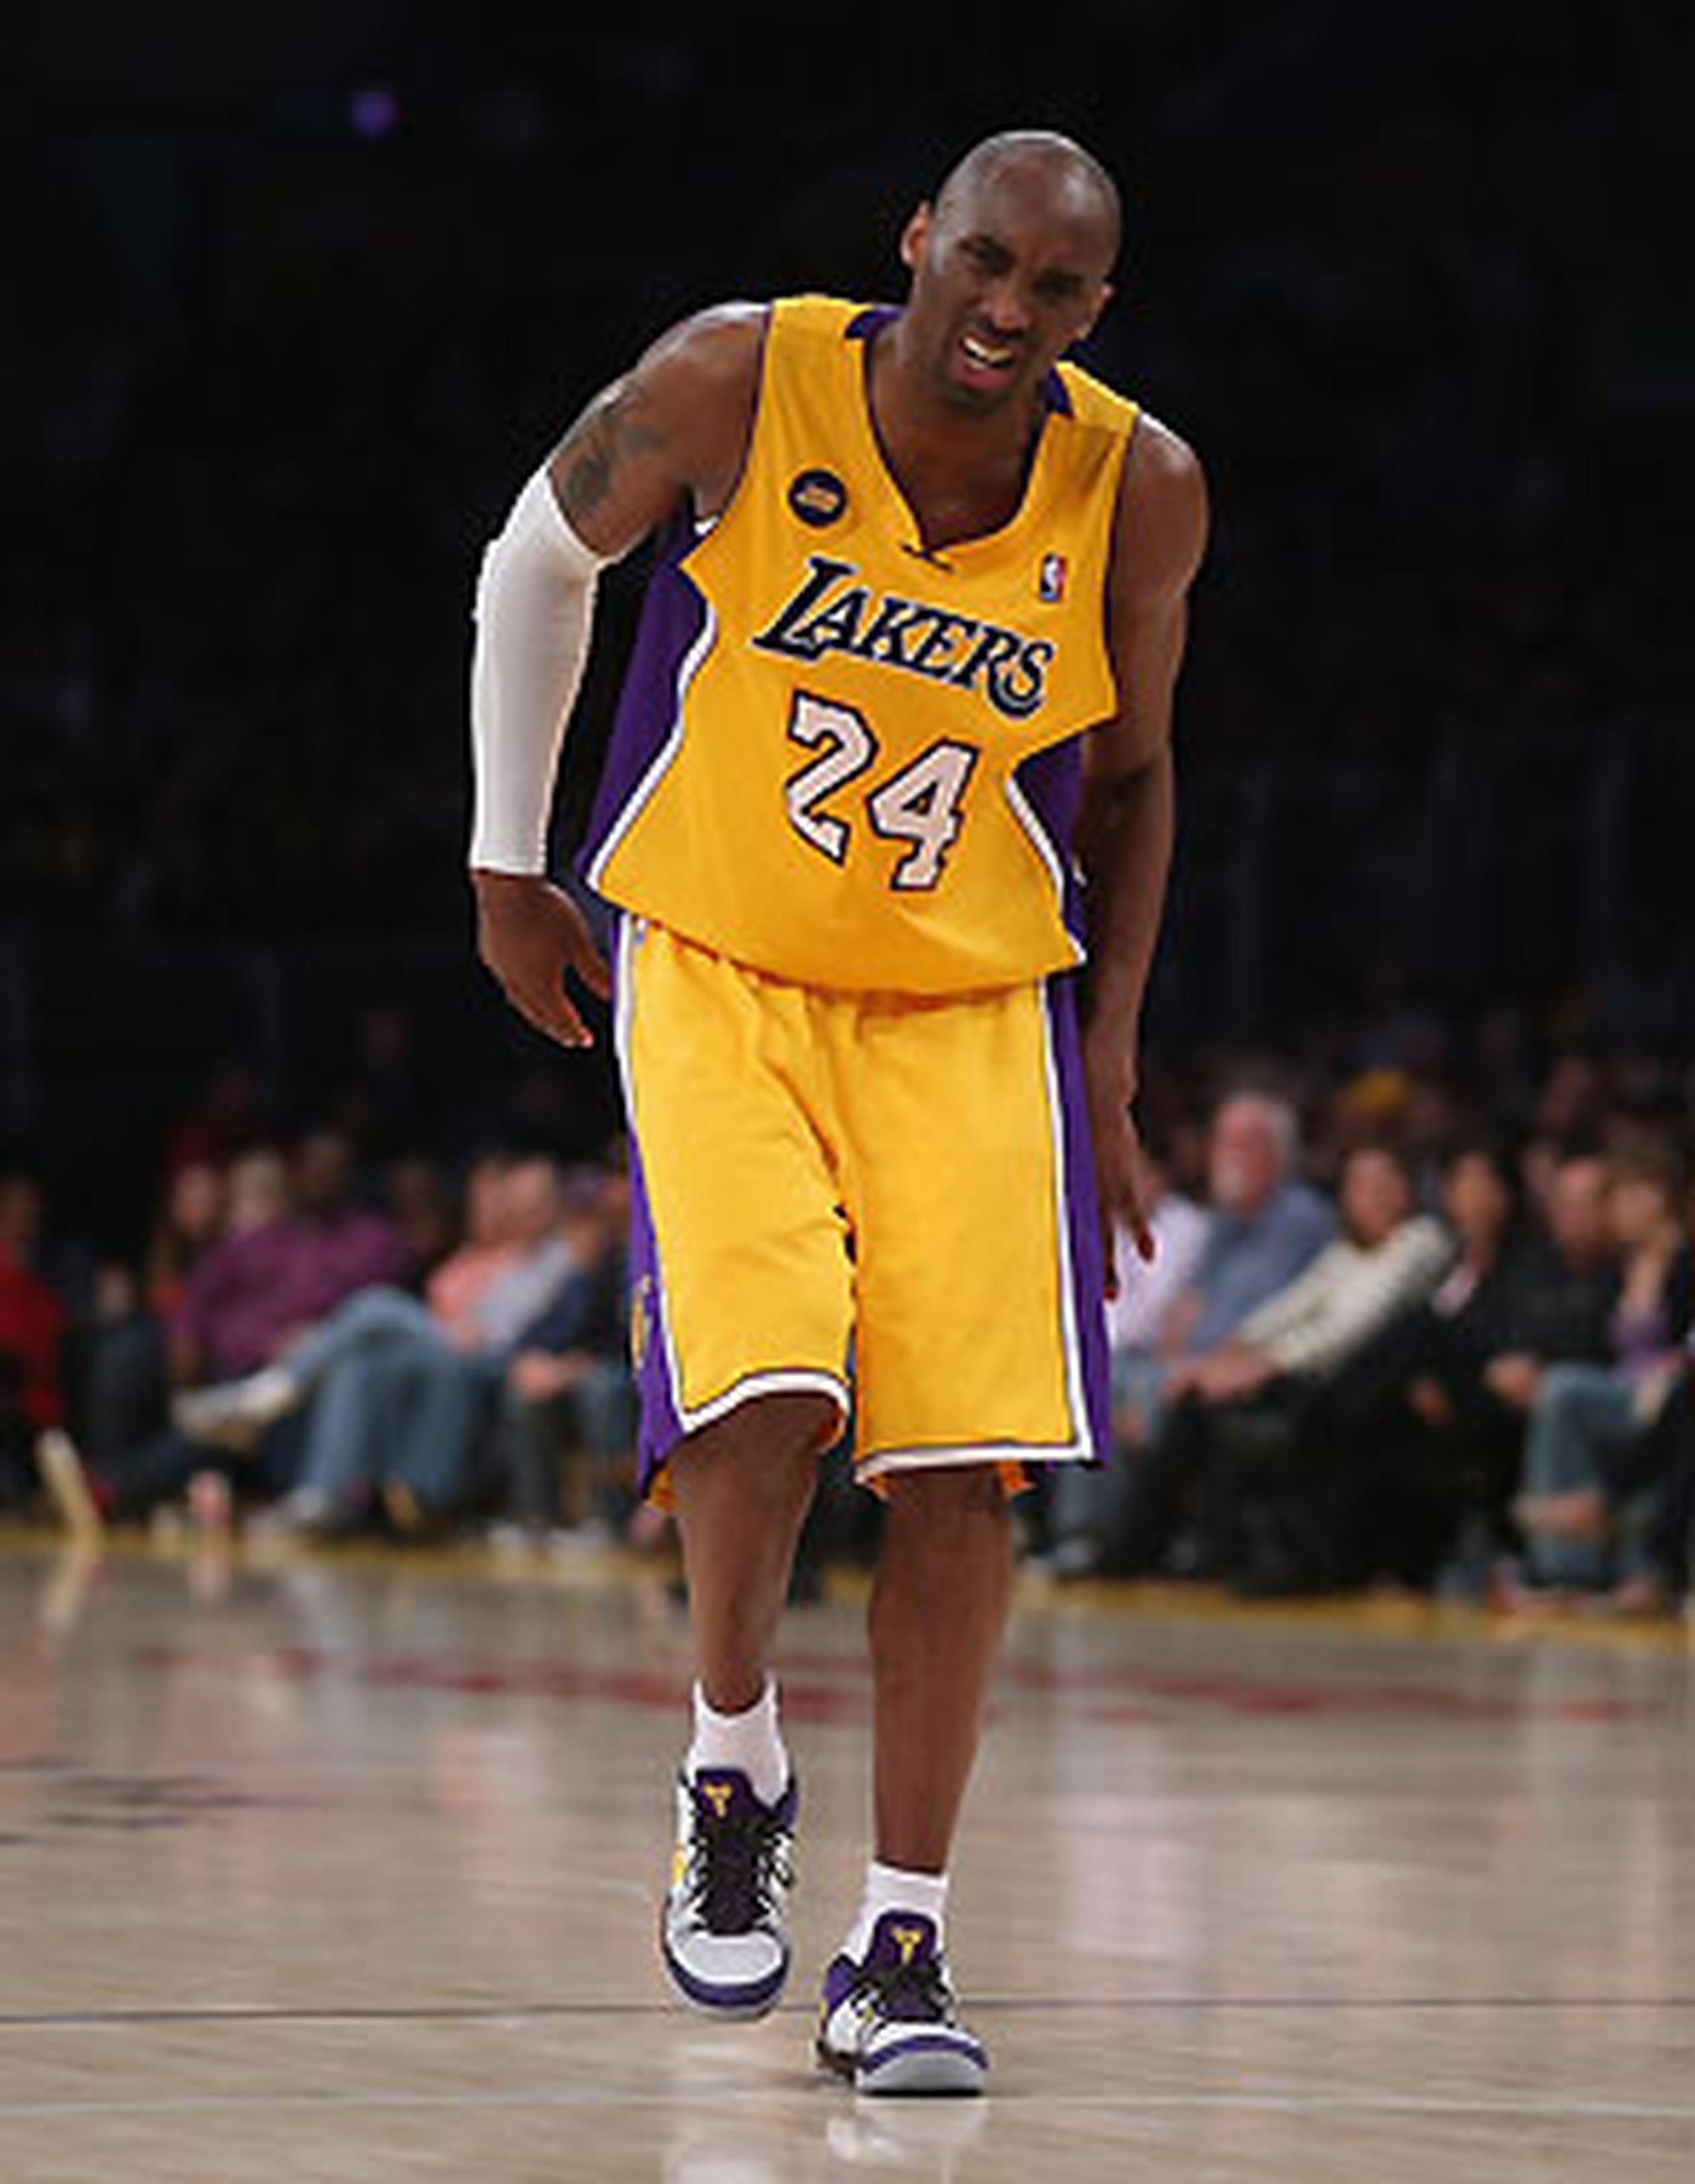 Durante el partido en el que los Lakers ganaron 118-116 a los Warior, Bryant había anotado 34 puntos antes de lesionarse, cuando quedaba 3:08 minutos para el final. (AFP / Jeff Gross)